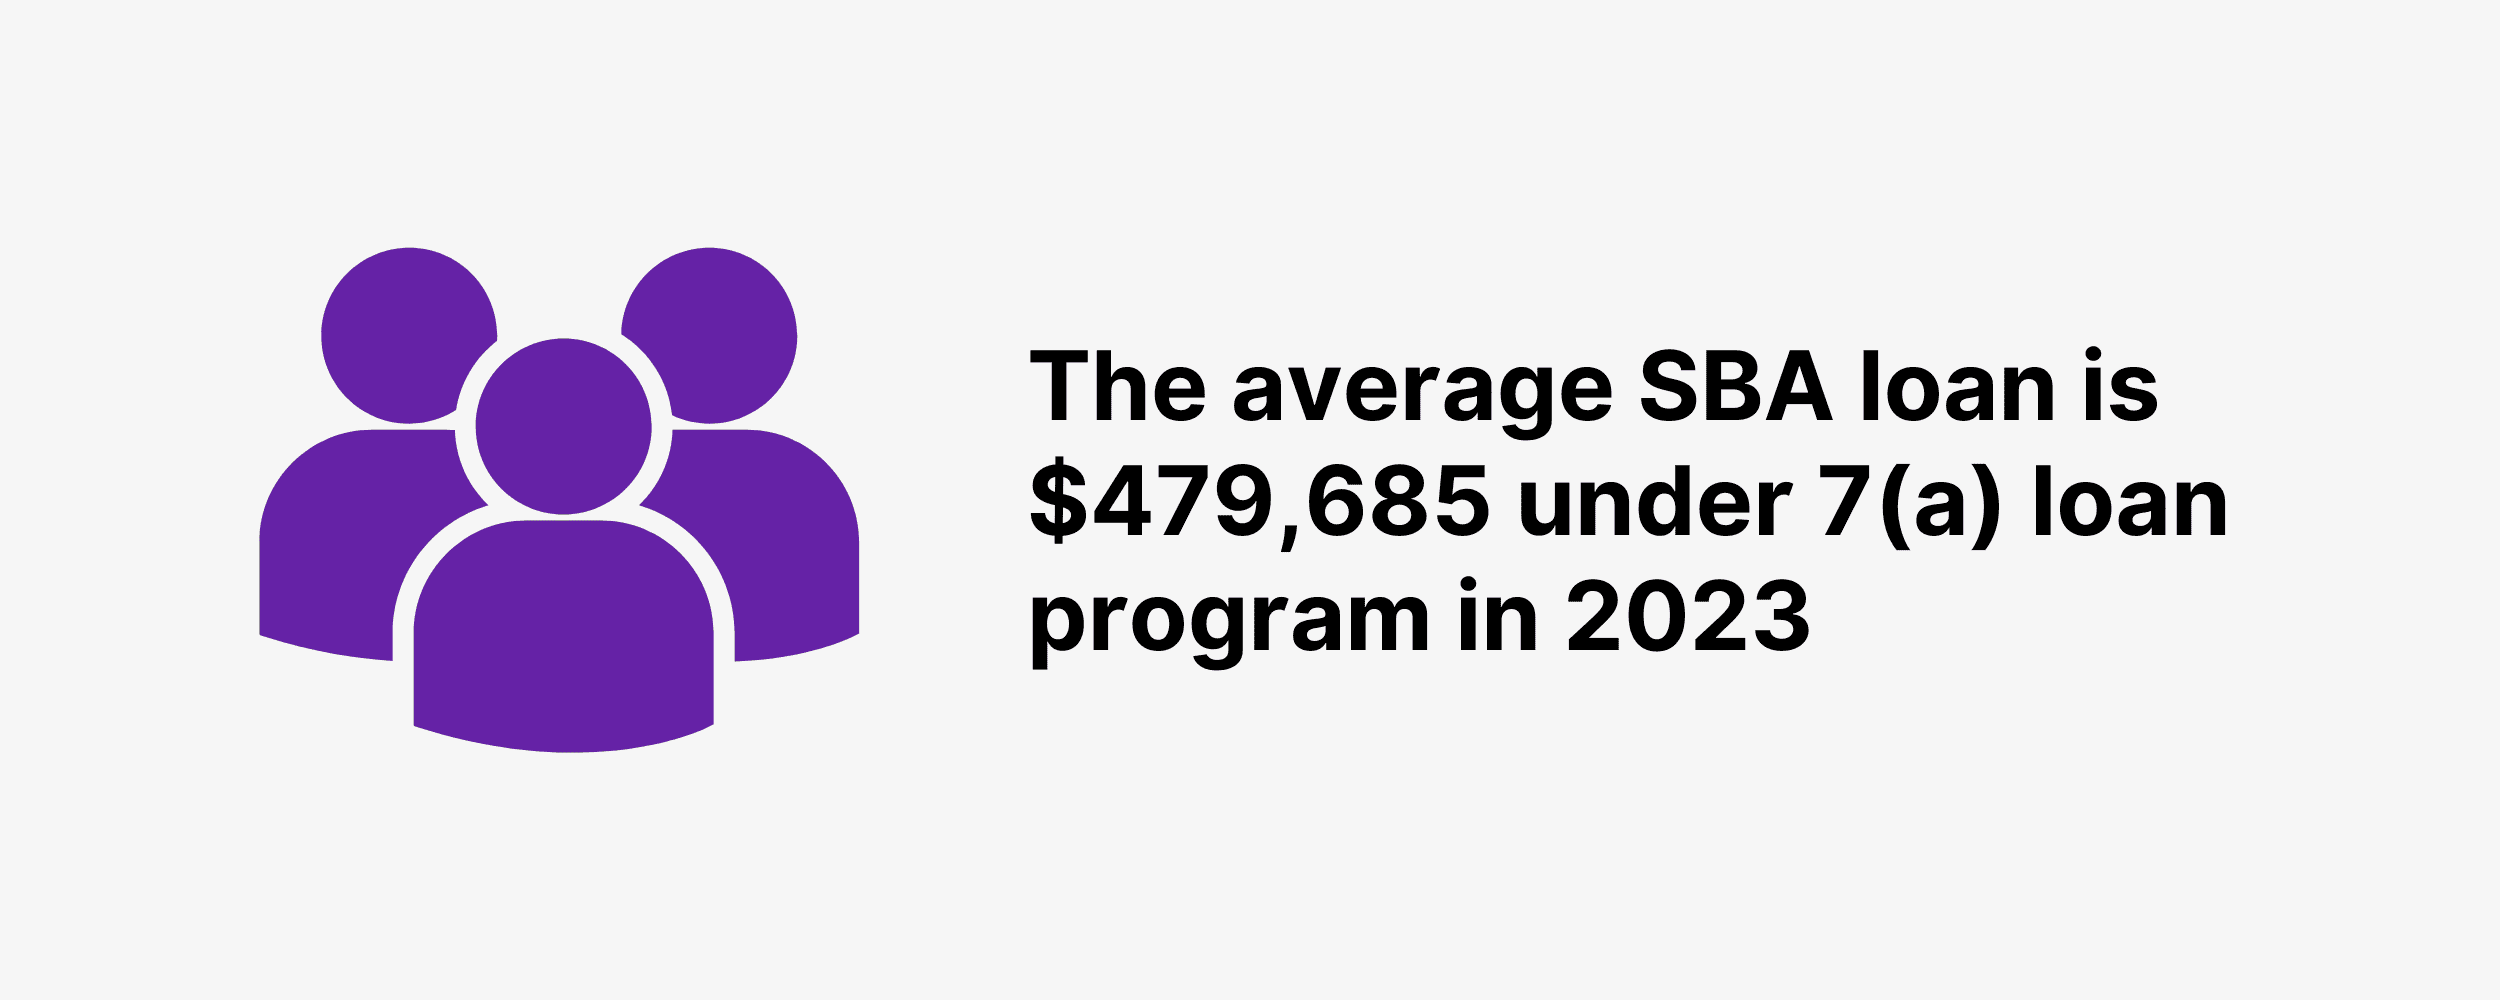 The average SBA loan is $479,685 under 7(a) loan program in 2023